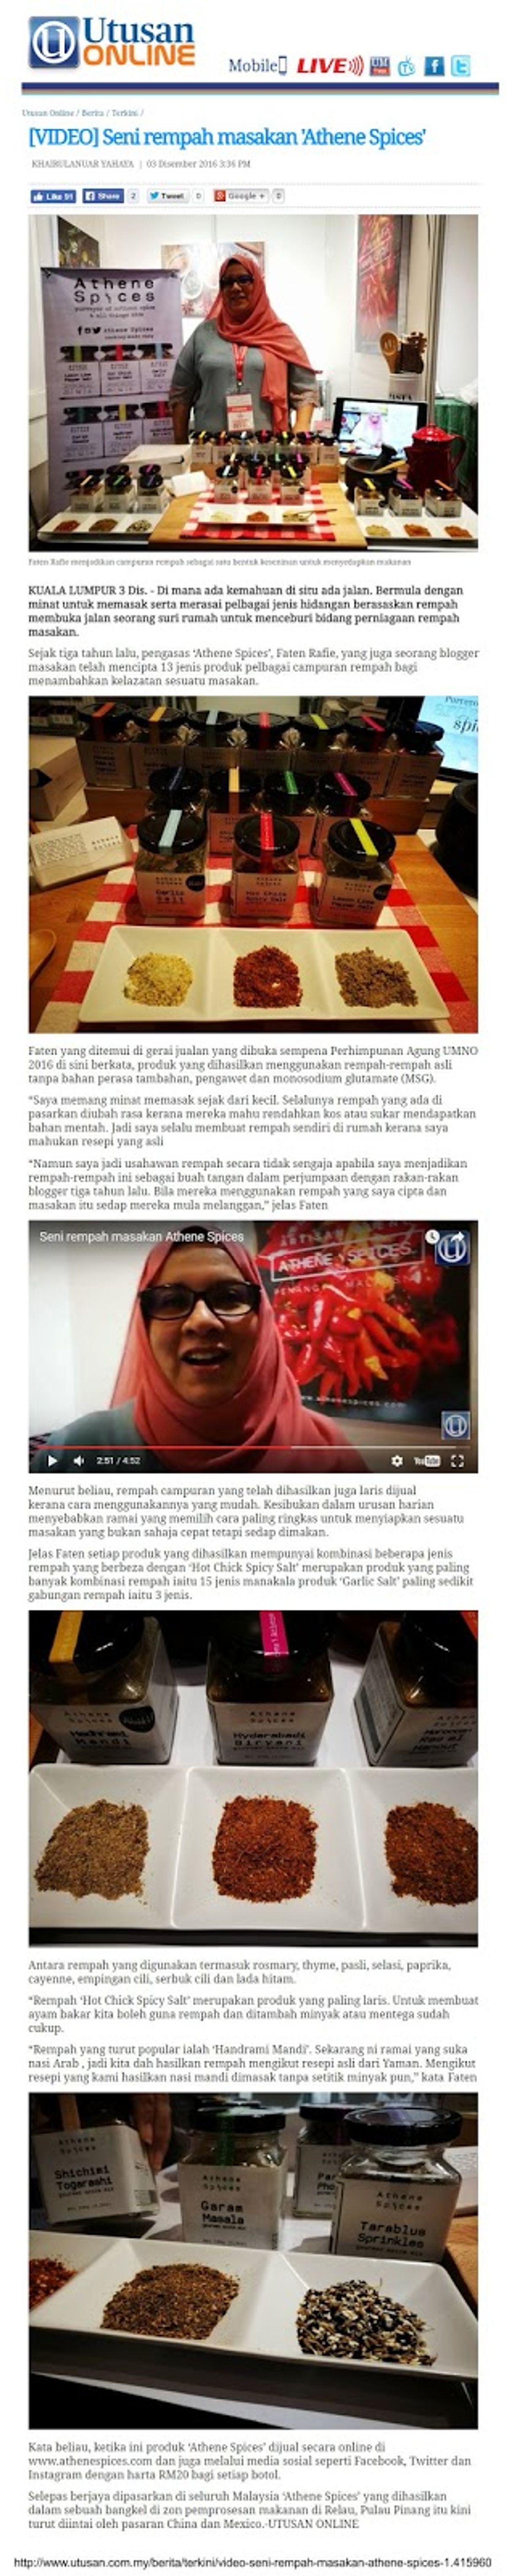 Utusan Malaysia Online - 3 December 2016